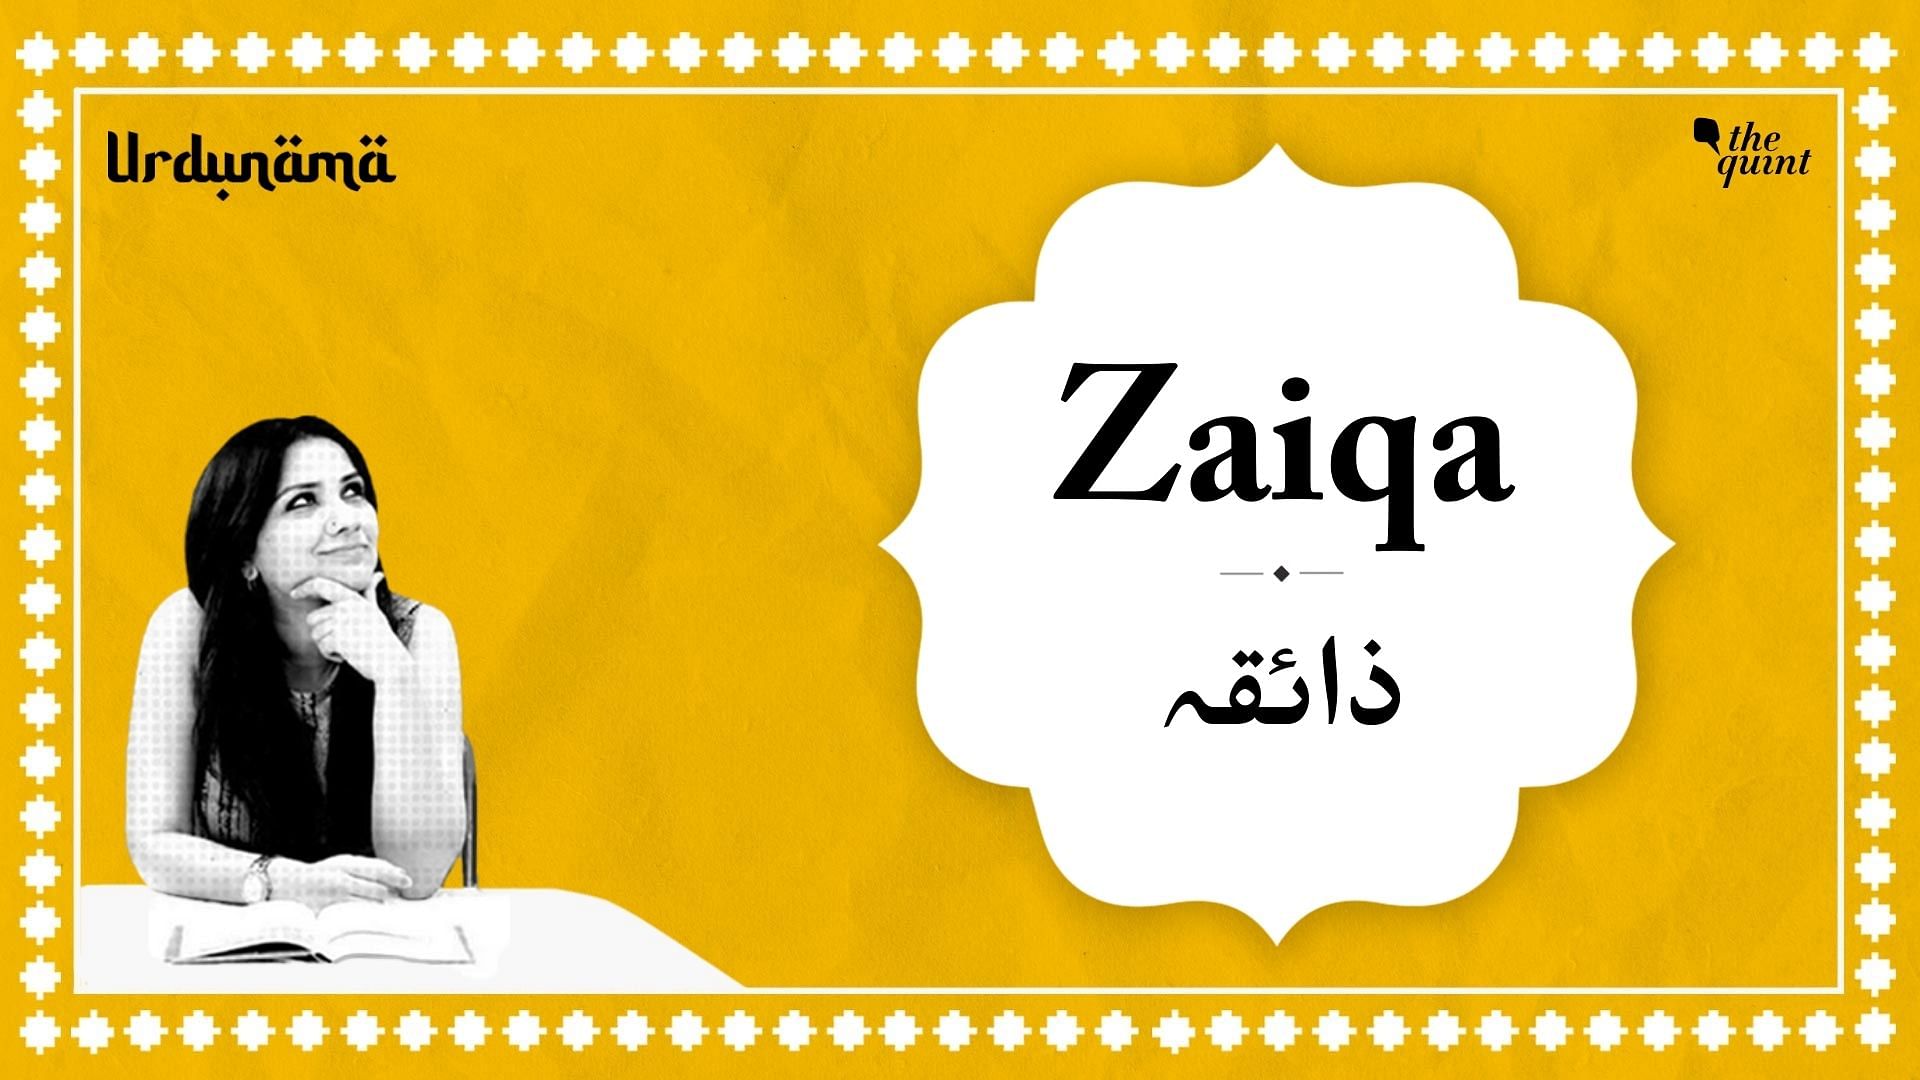 <div class="paragraphs"><p>Urdunama episode on 'Zaiqa'</p></div>